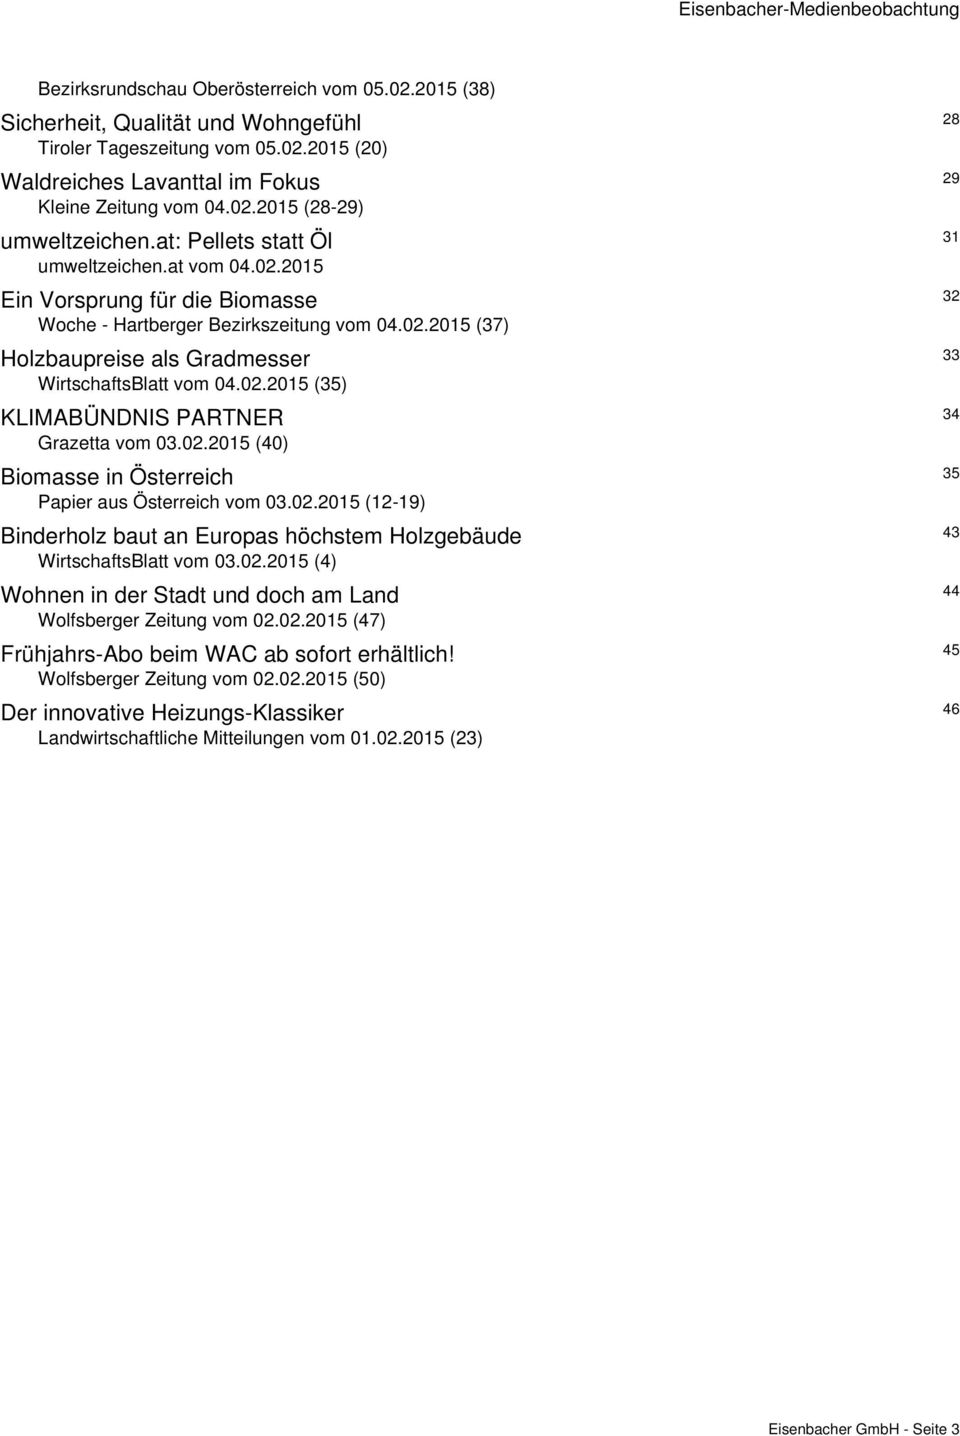 02.2015 (35) KLIMABÜNDNIS PARTNER 34 Grazetta vom 03.02.2015 (40) Biomasse in Österreich 35 Papier aus Österreich vom 03.02.2015 (12-19) Binderholz baut an Europas höchstem Holzgebäude 43 WirtschaftsBlatt vom 03.